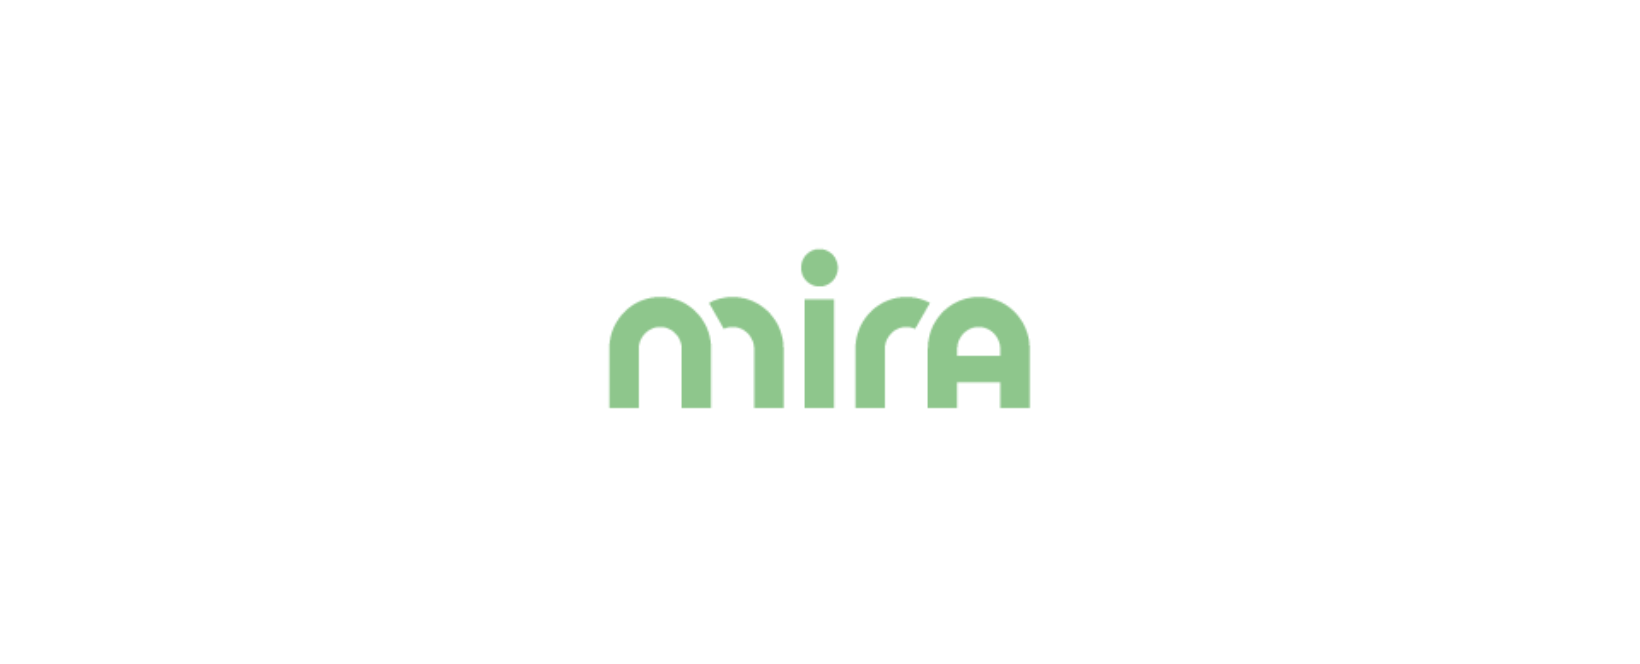 Mira Fertility Discount Code 2022